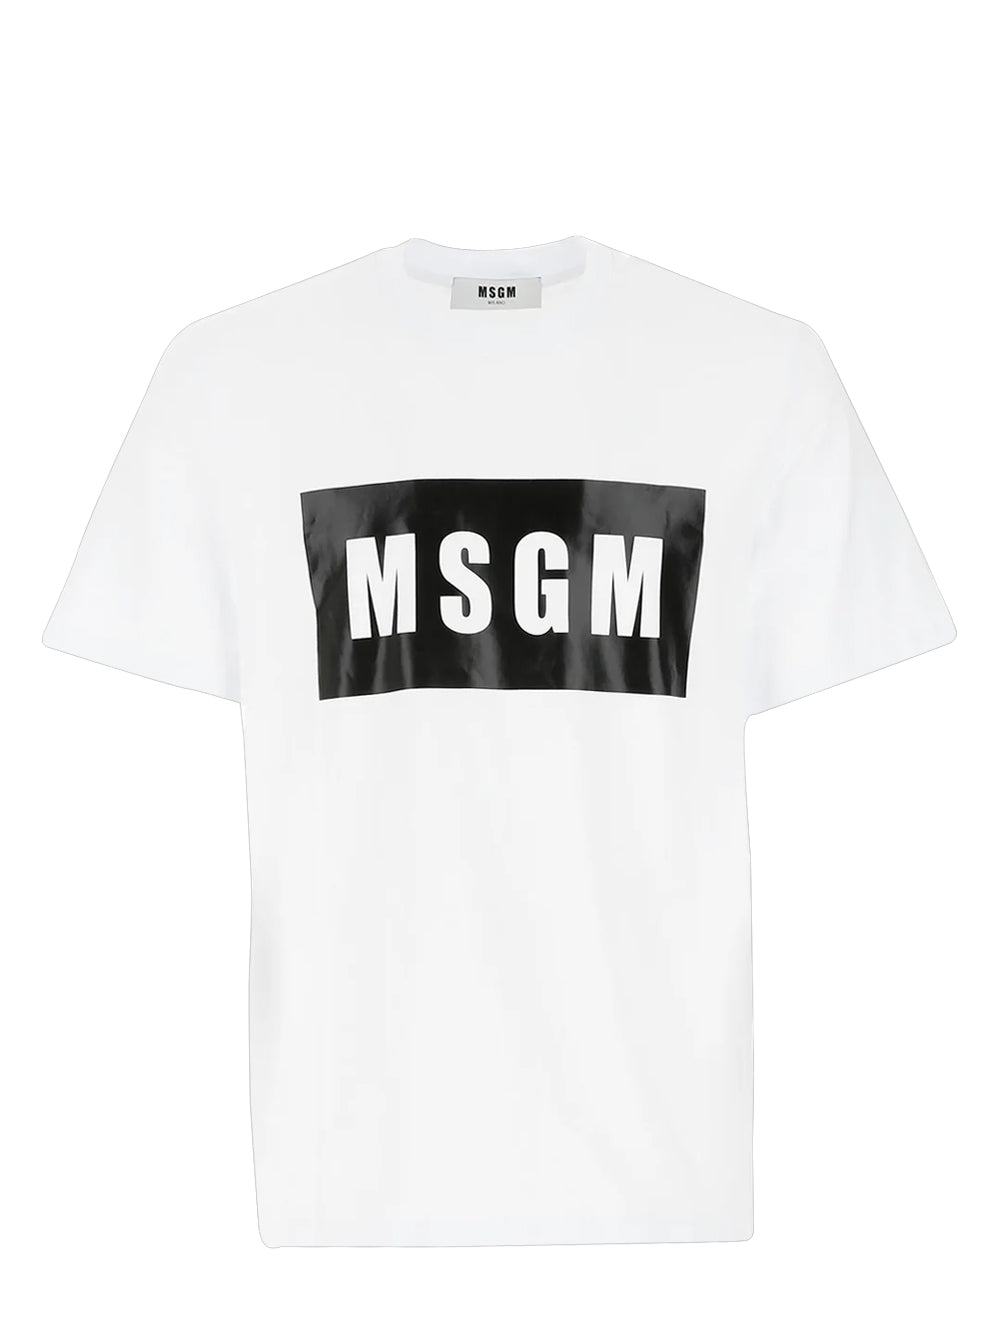 Msgm Black Box Logo Cotton Tee White 1